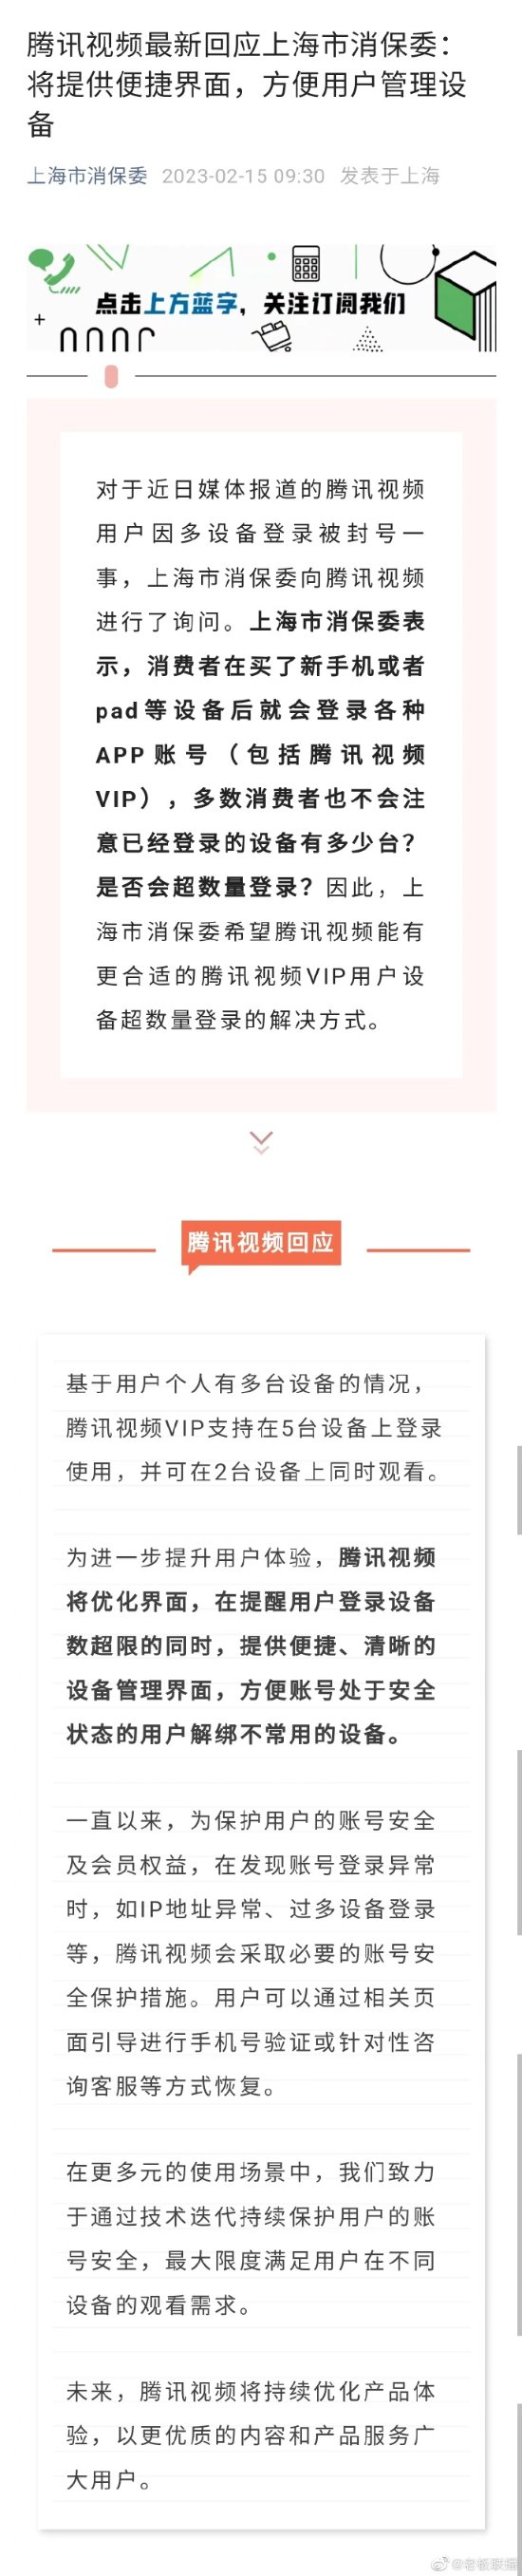 騰訊影片最新回應上海市消保委：將允許使用者管理裝置